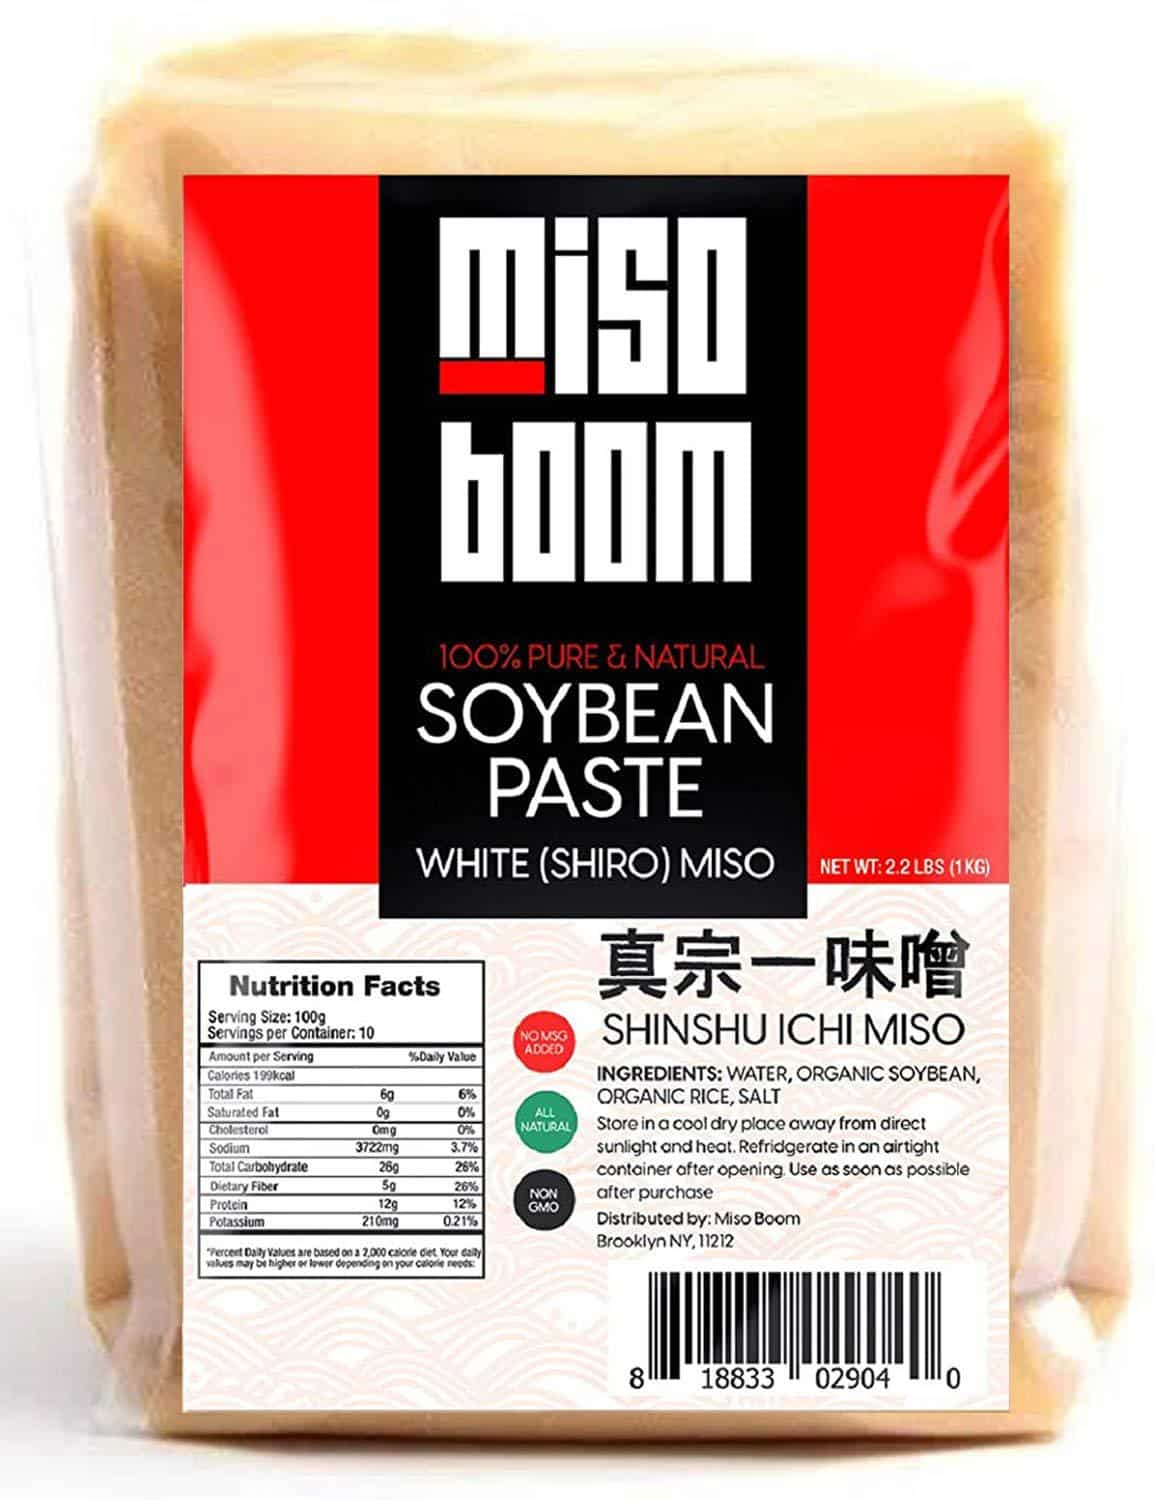 Miso boom white shiro miso paste